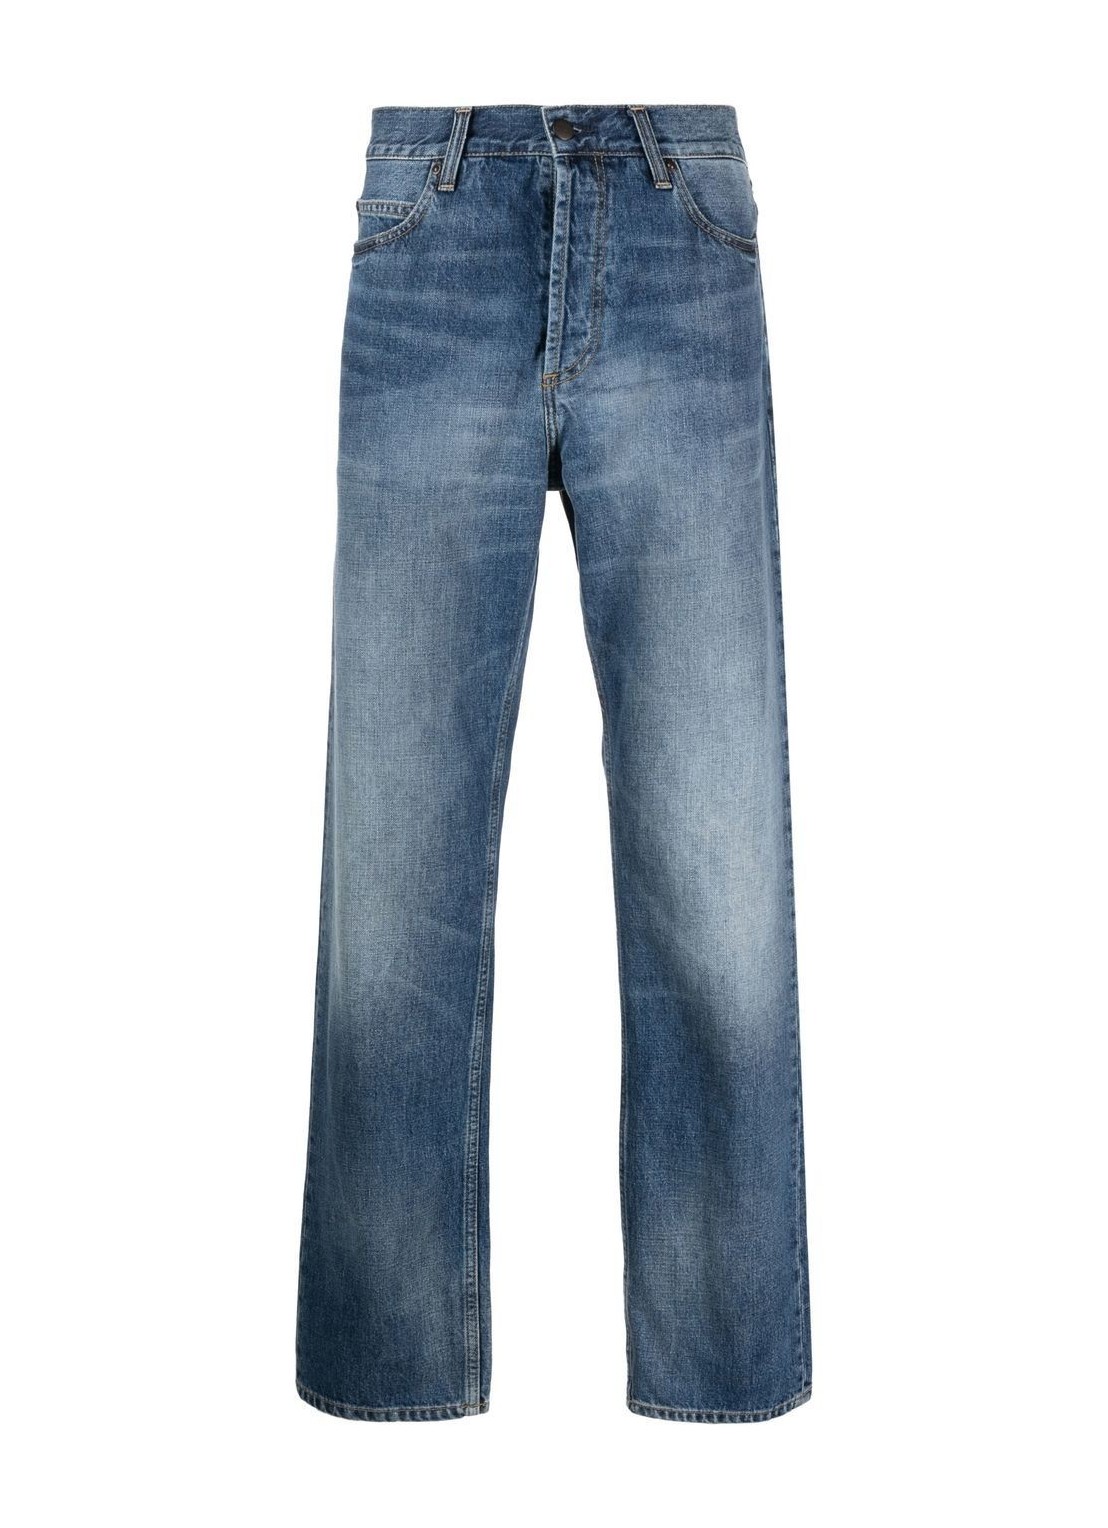 Pantalon jeans carhartt marlow pant - i023029 01wj talla 36
 